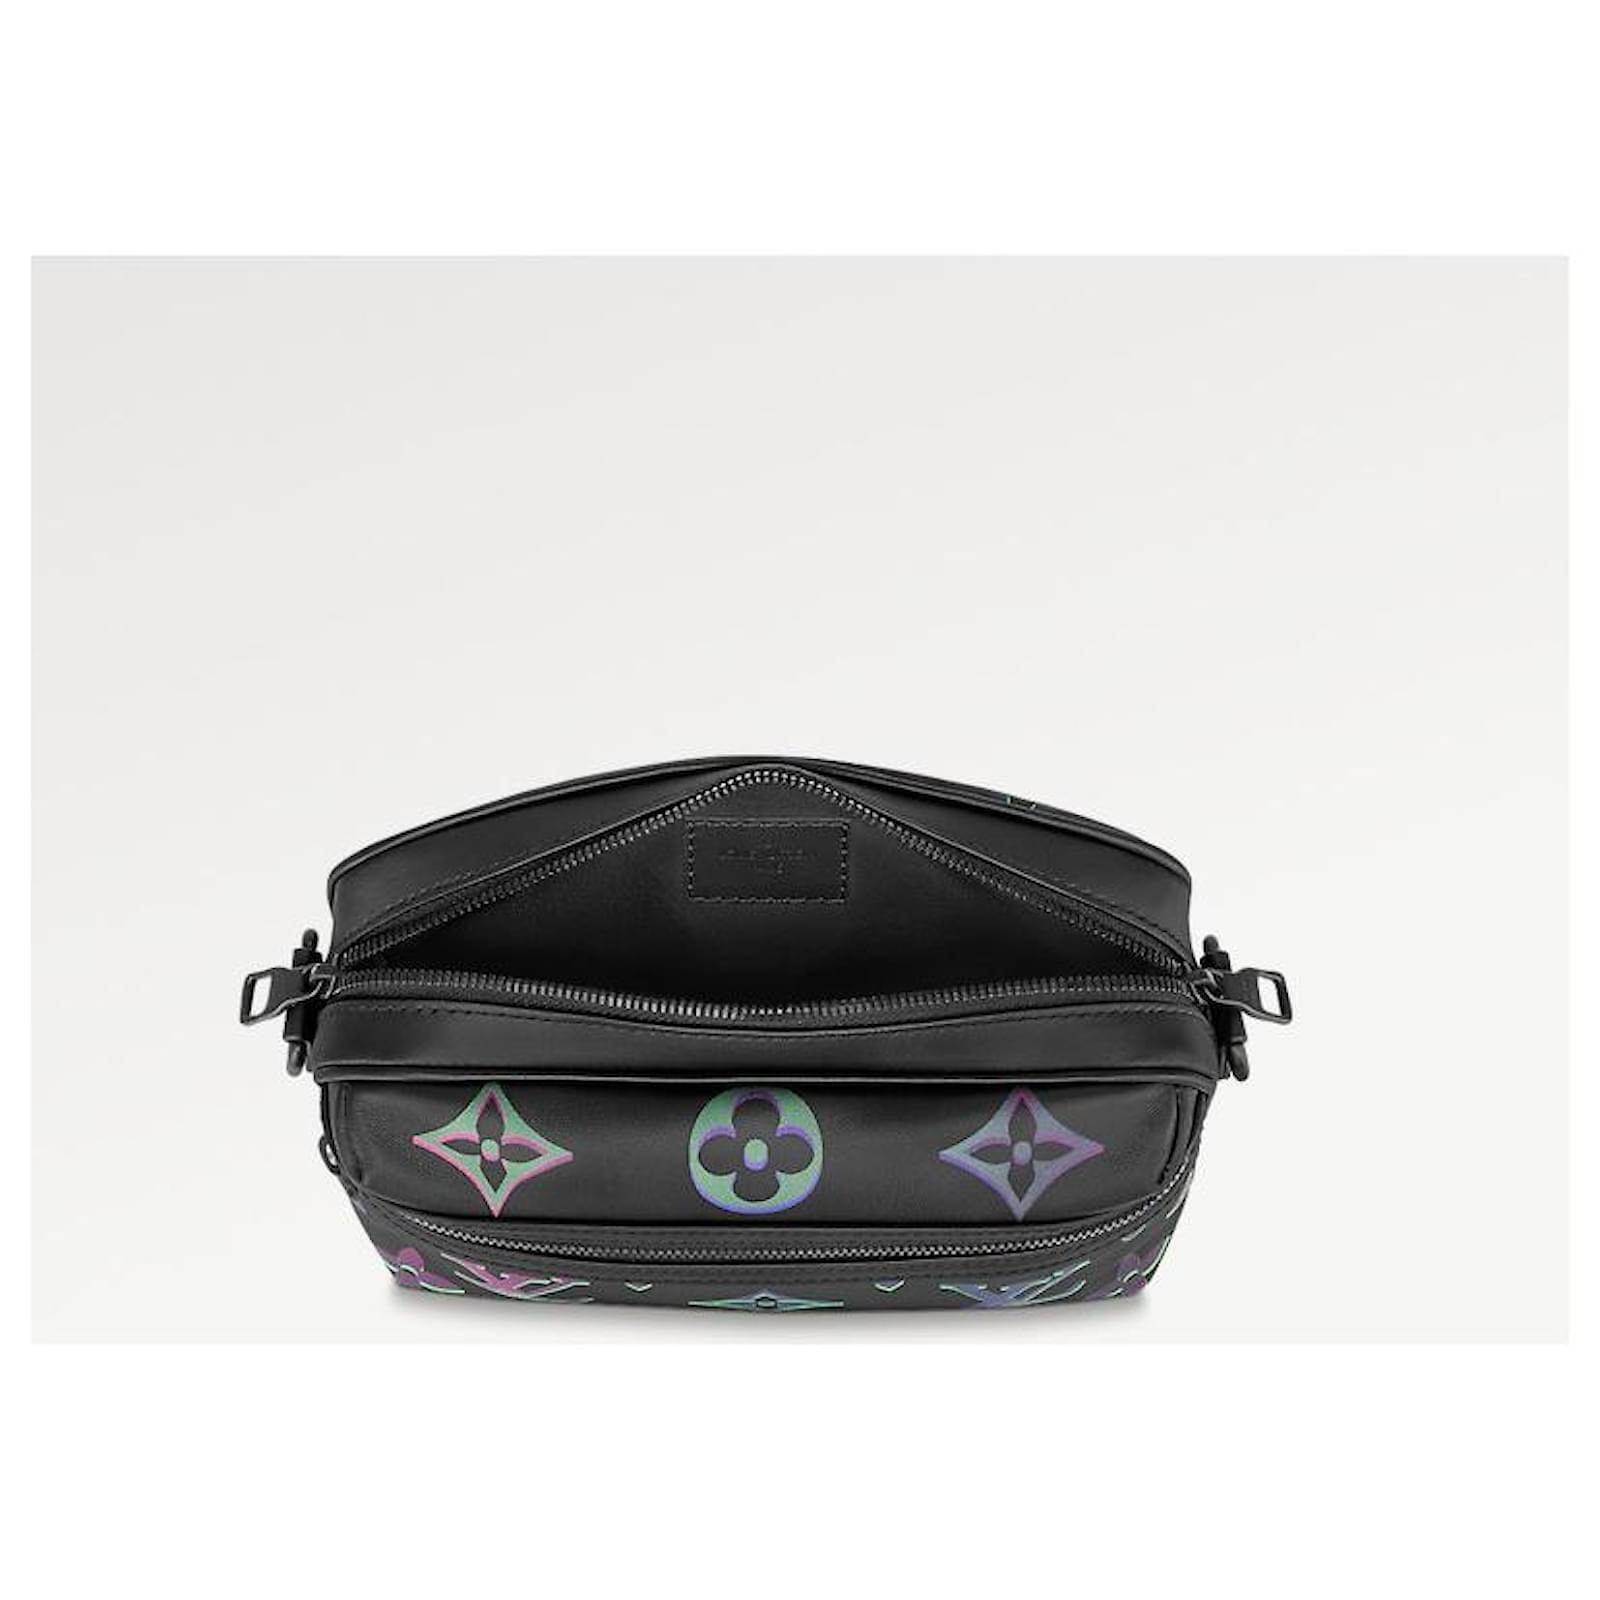 Louis Vuitton - Comet Messenger PM Bag - Leather - Black Borealis - Men - Luxury